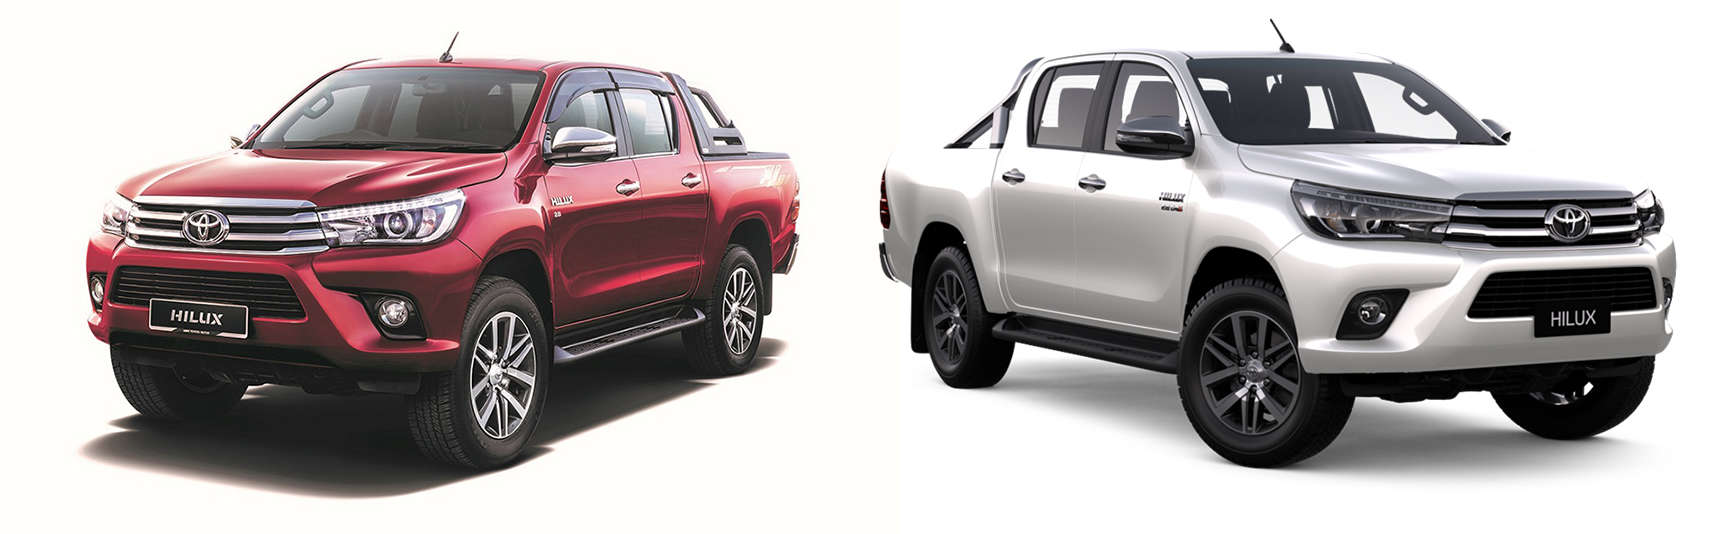 Toyota Hilux 2016 mẫu mới thêm hai màu mới : Đỏ và trắng